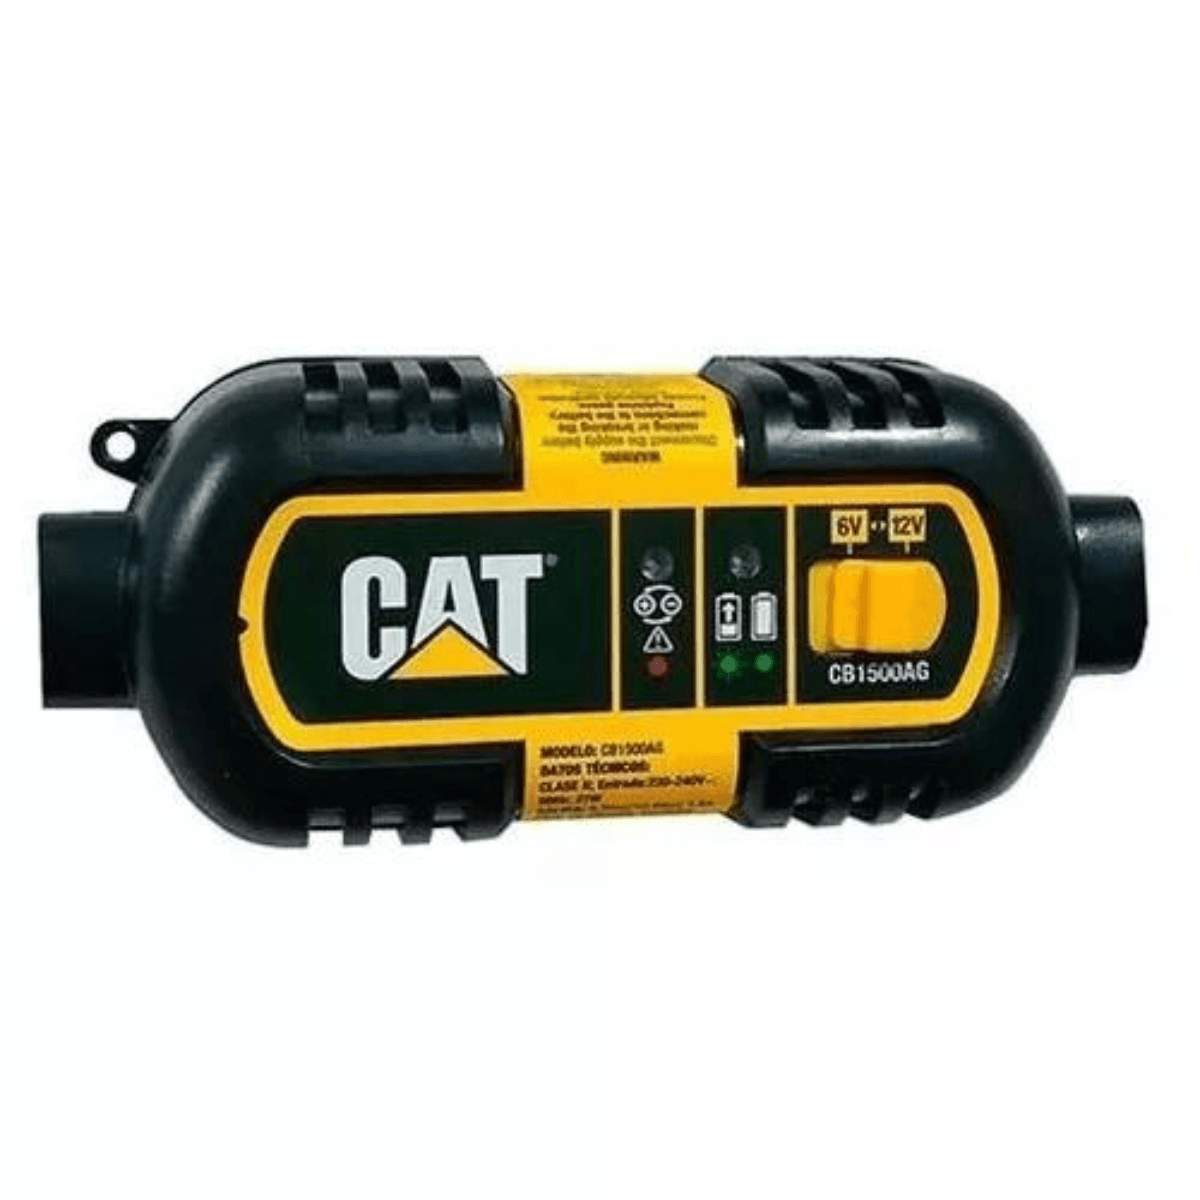 Cargador Mantenedor Bateria Auto Moto Cat 6v 12v Inteligente